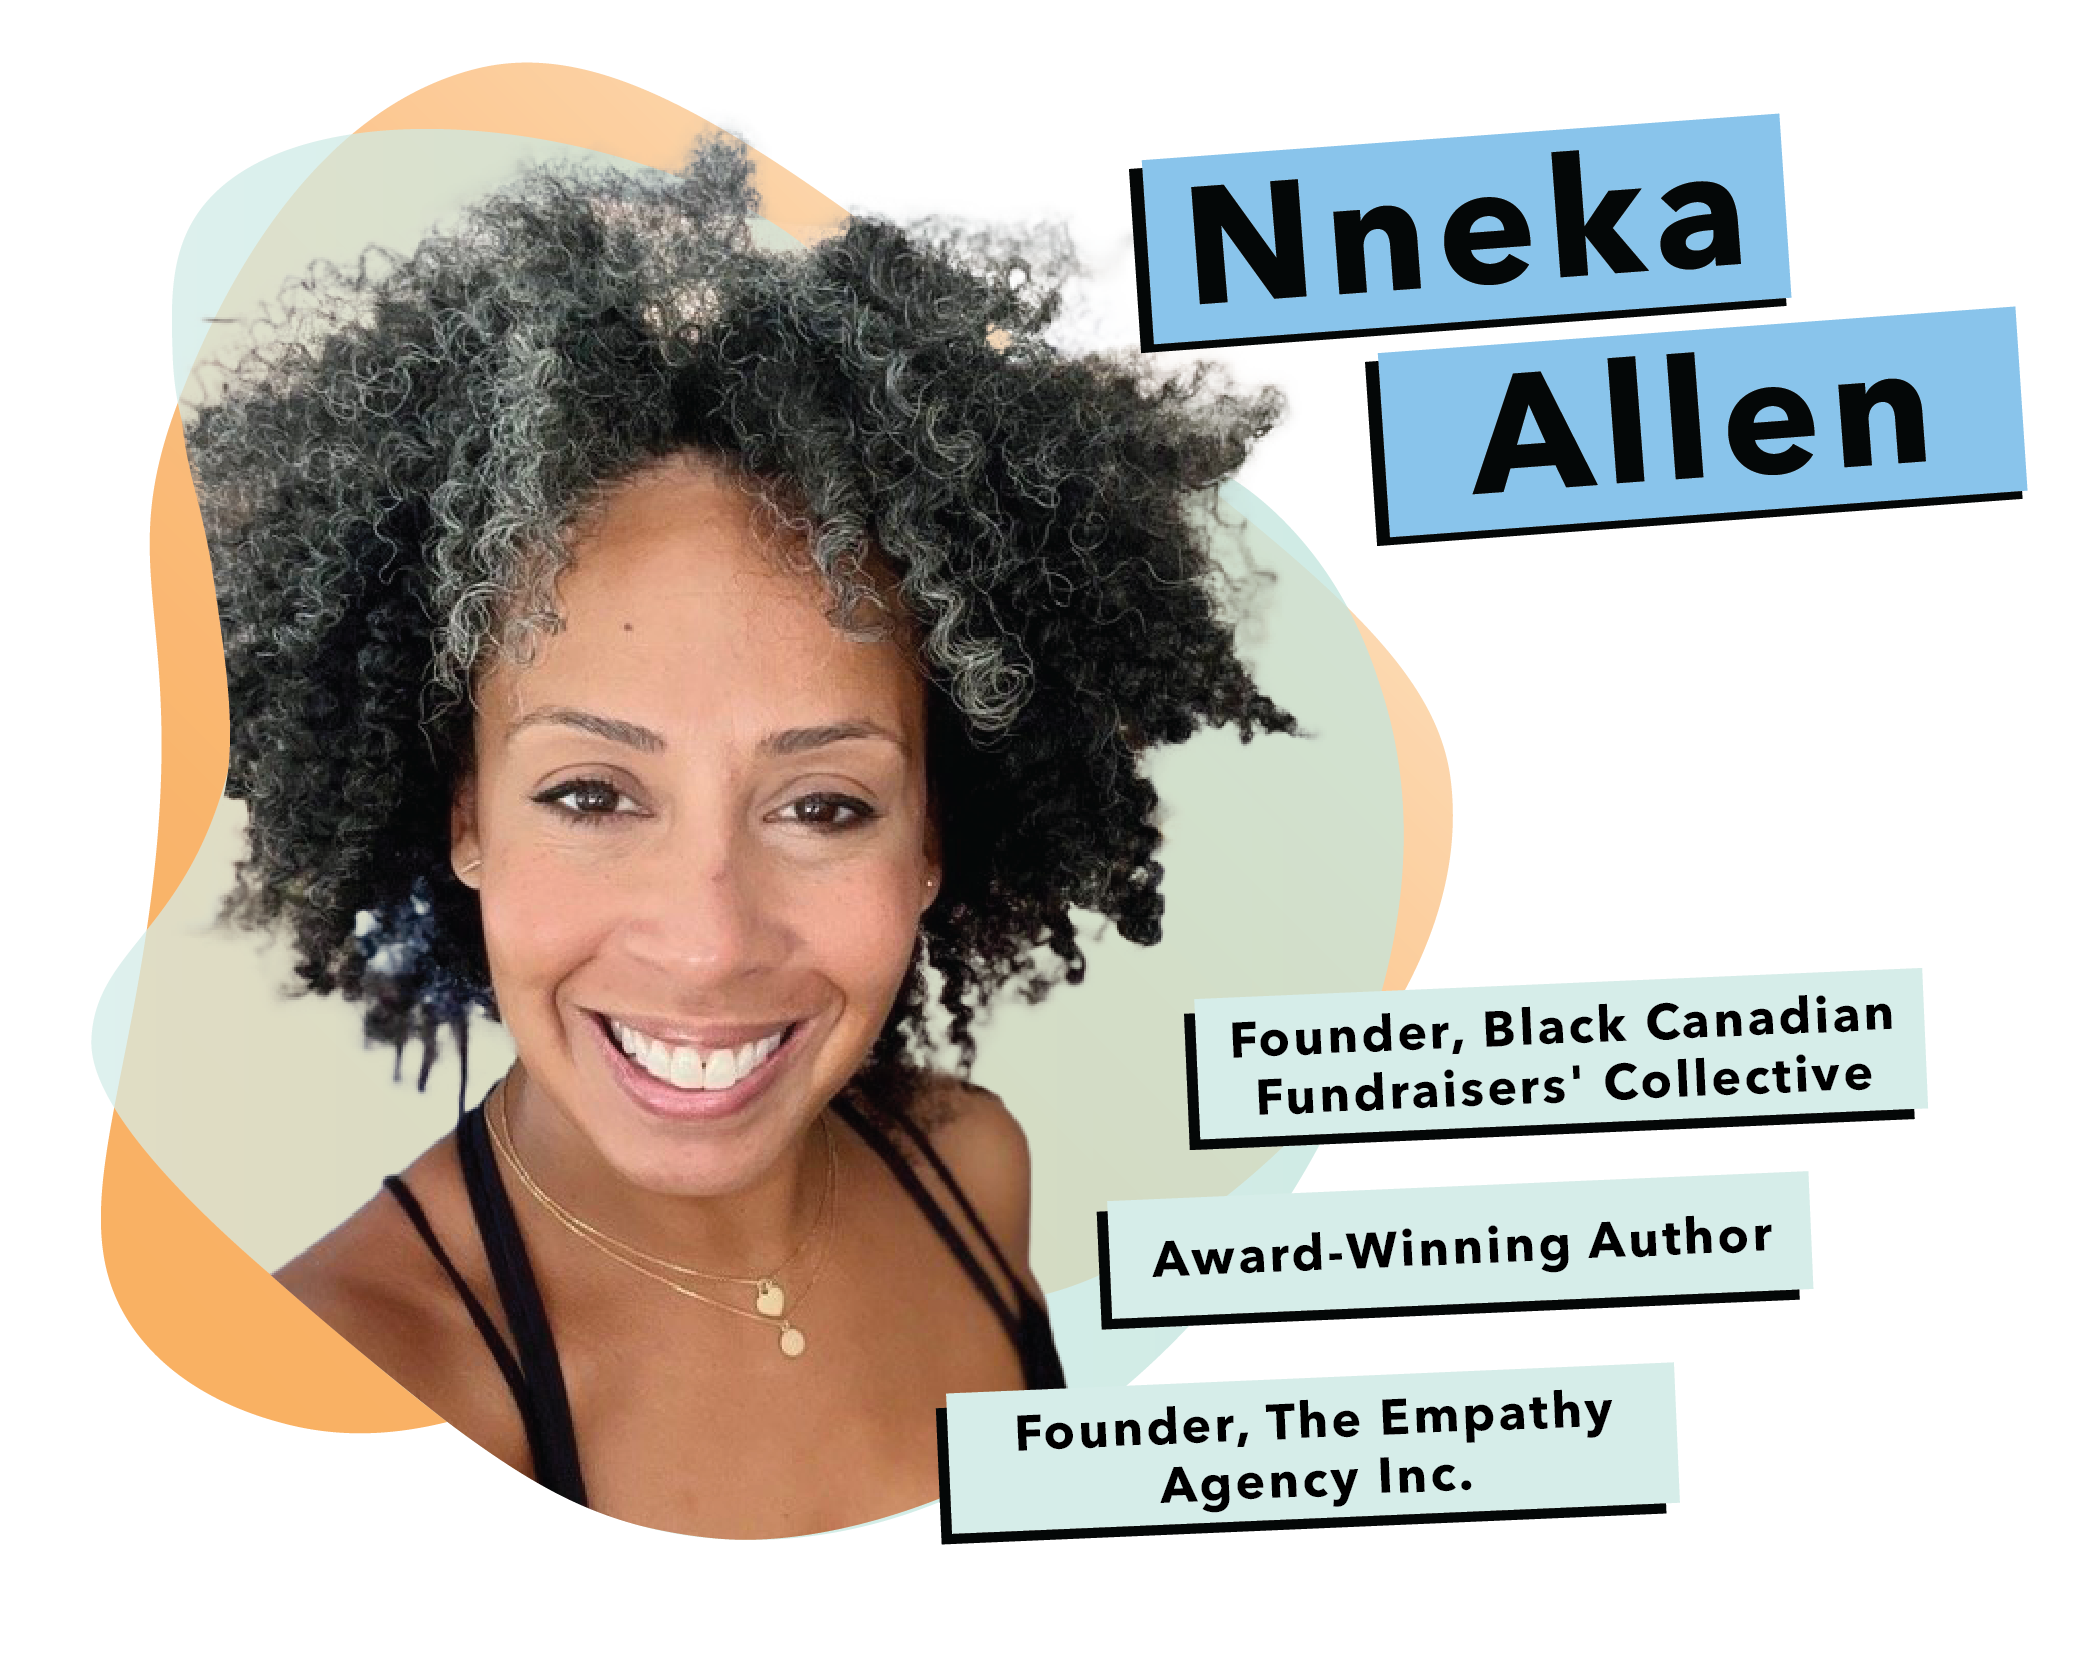 Nneka Allen With Bio